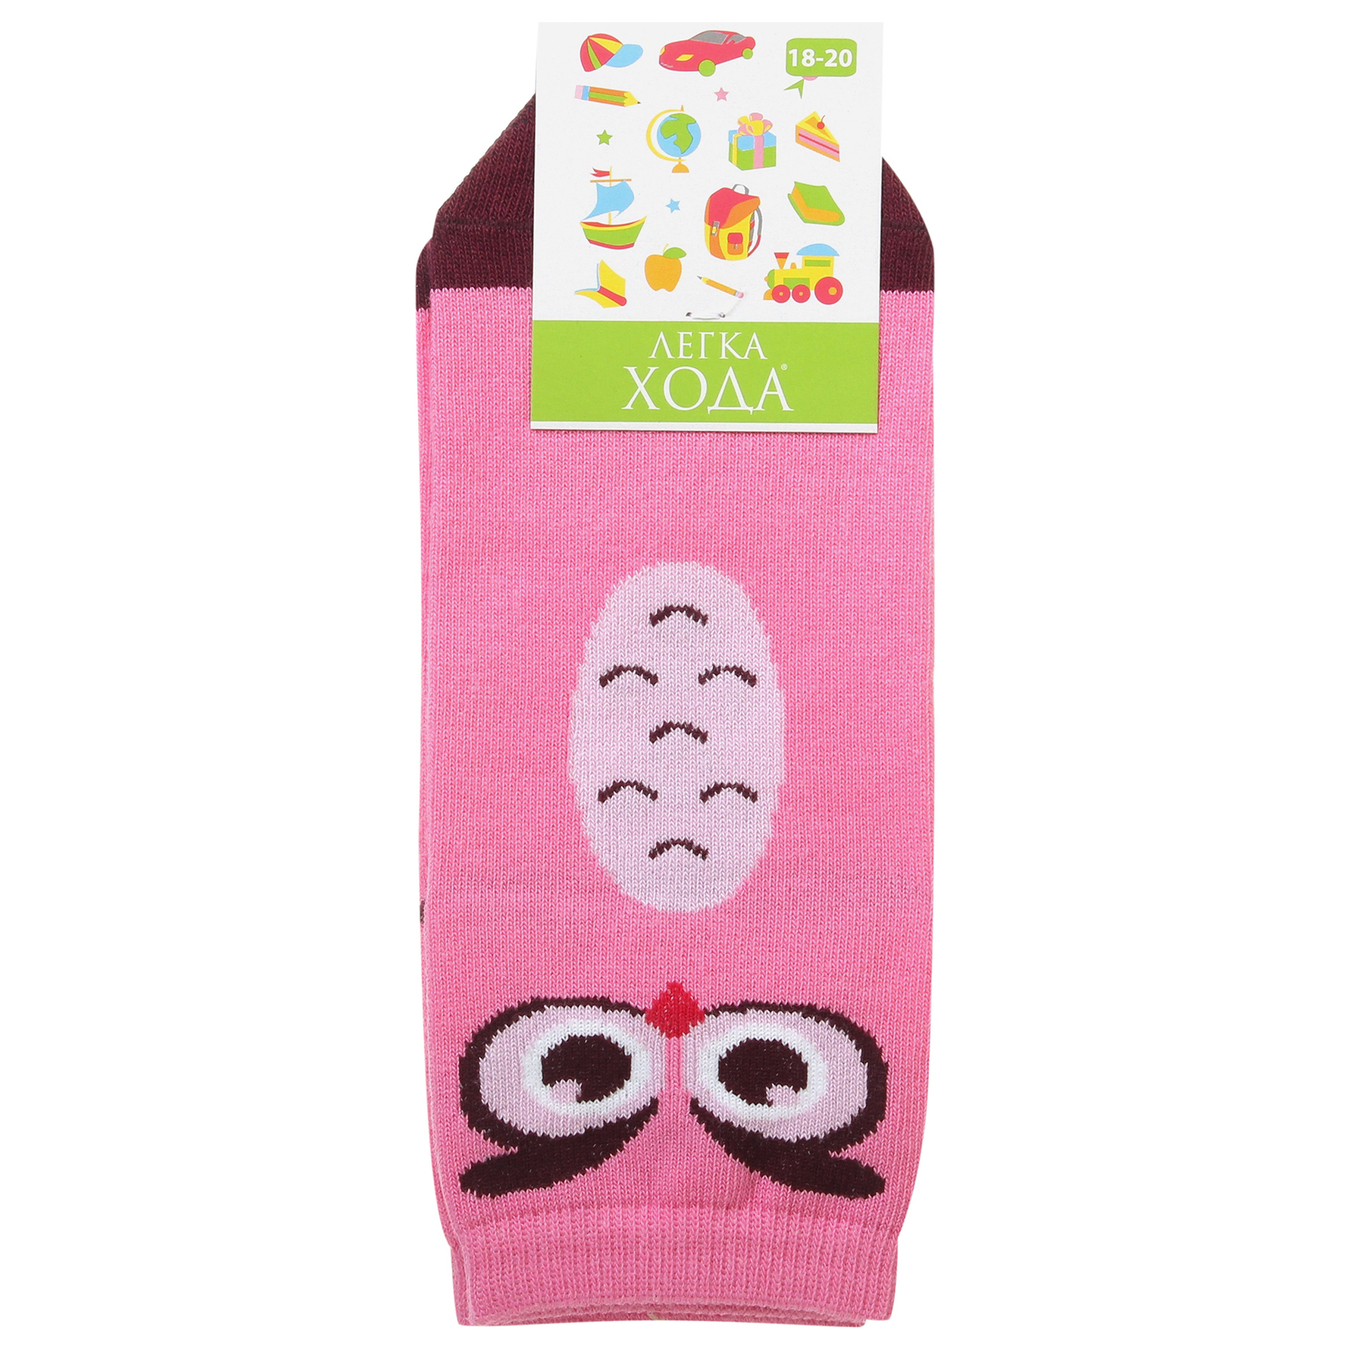 Children's socks Easy walking 9212 pink size 18-20